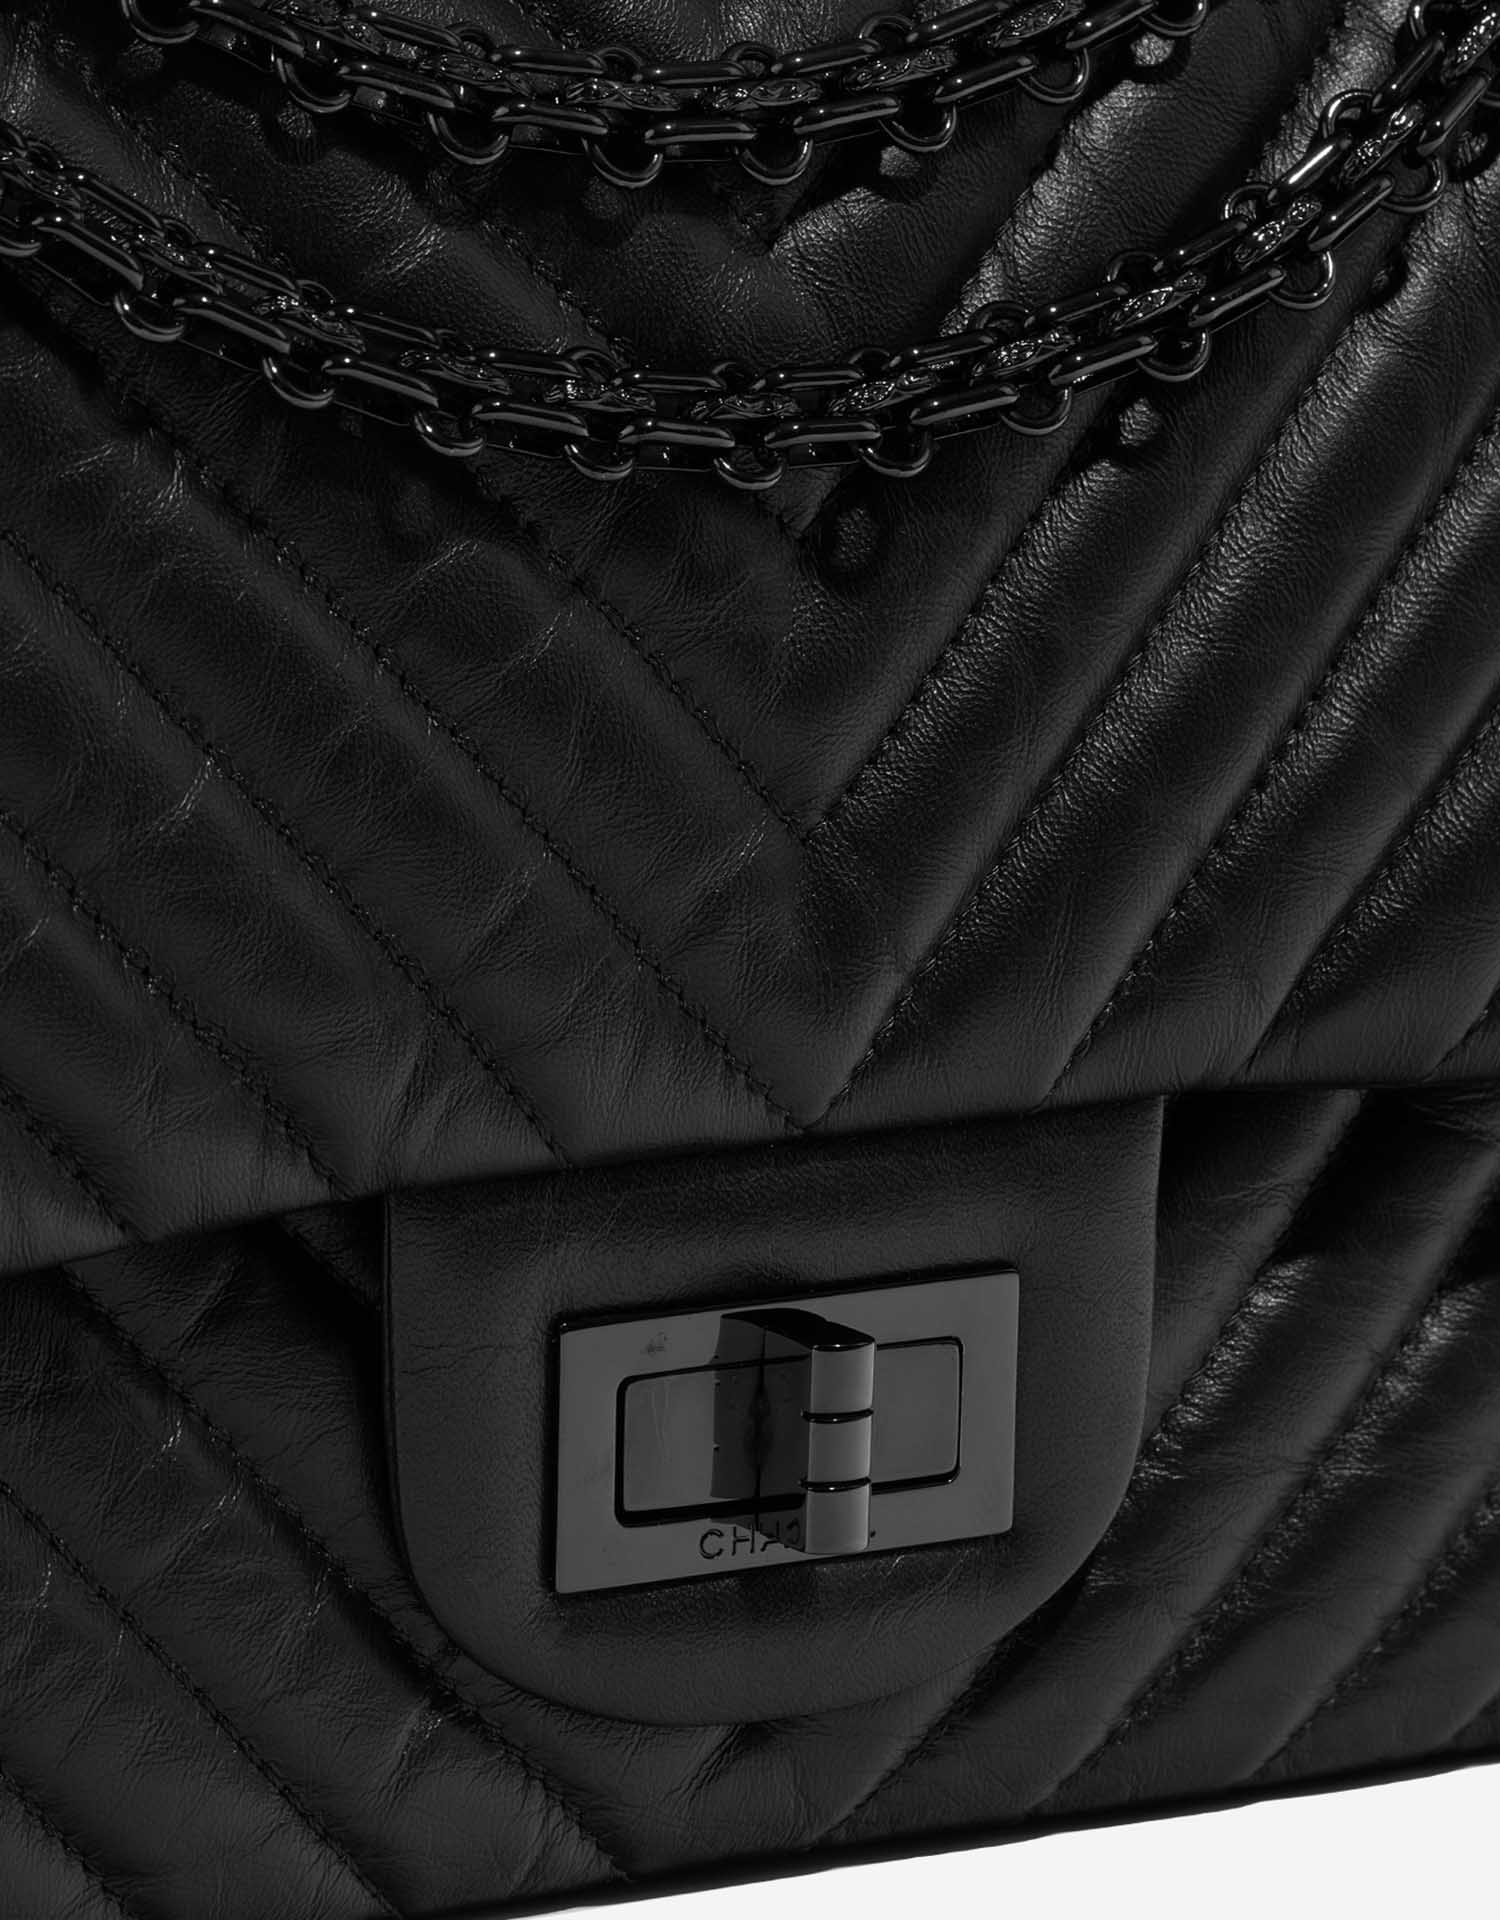 Sac Chanel d'occasion 2.55 Reissue 227 Veau So Black Noir Système de fermeture | Vendez votre sac de créateur sur Saclab.com